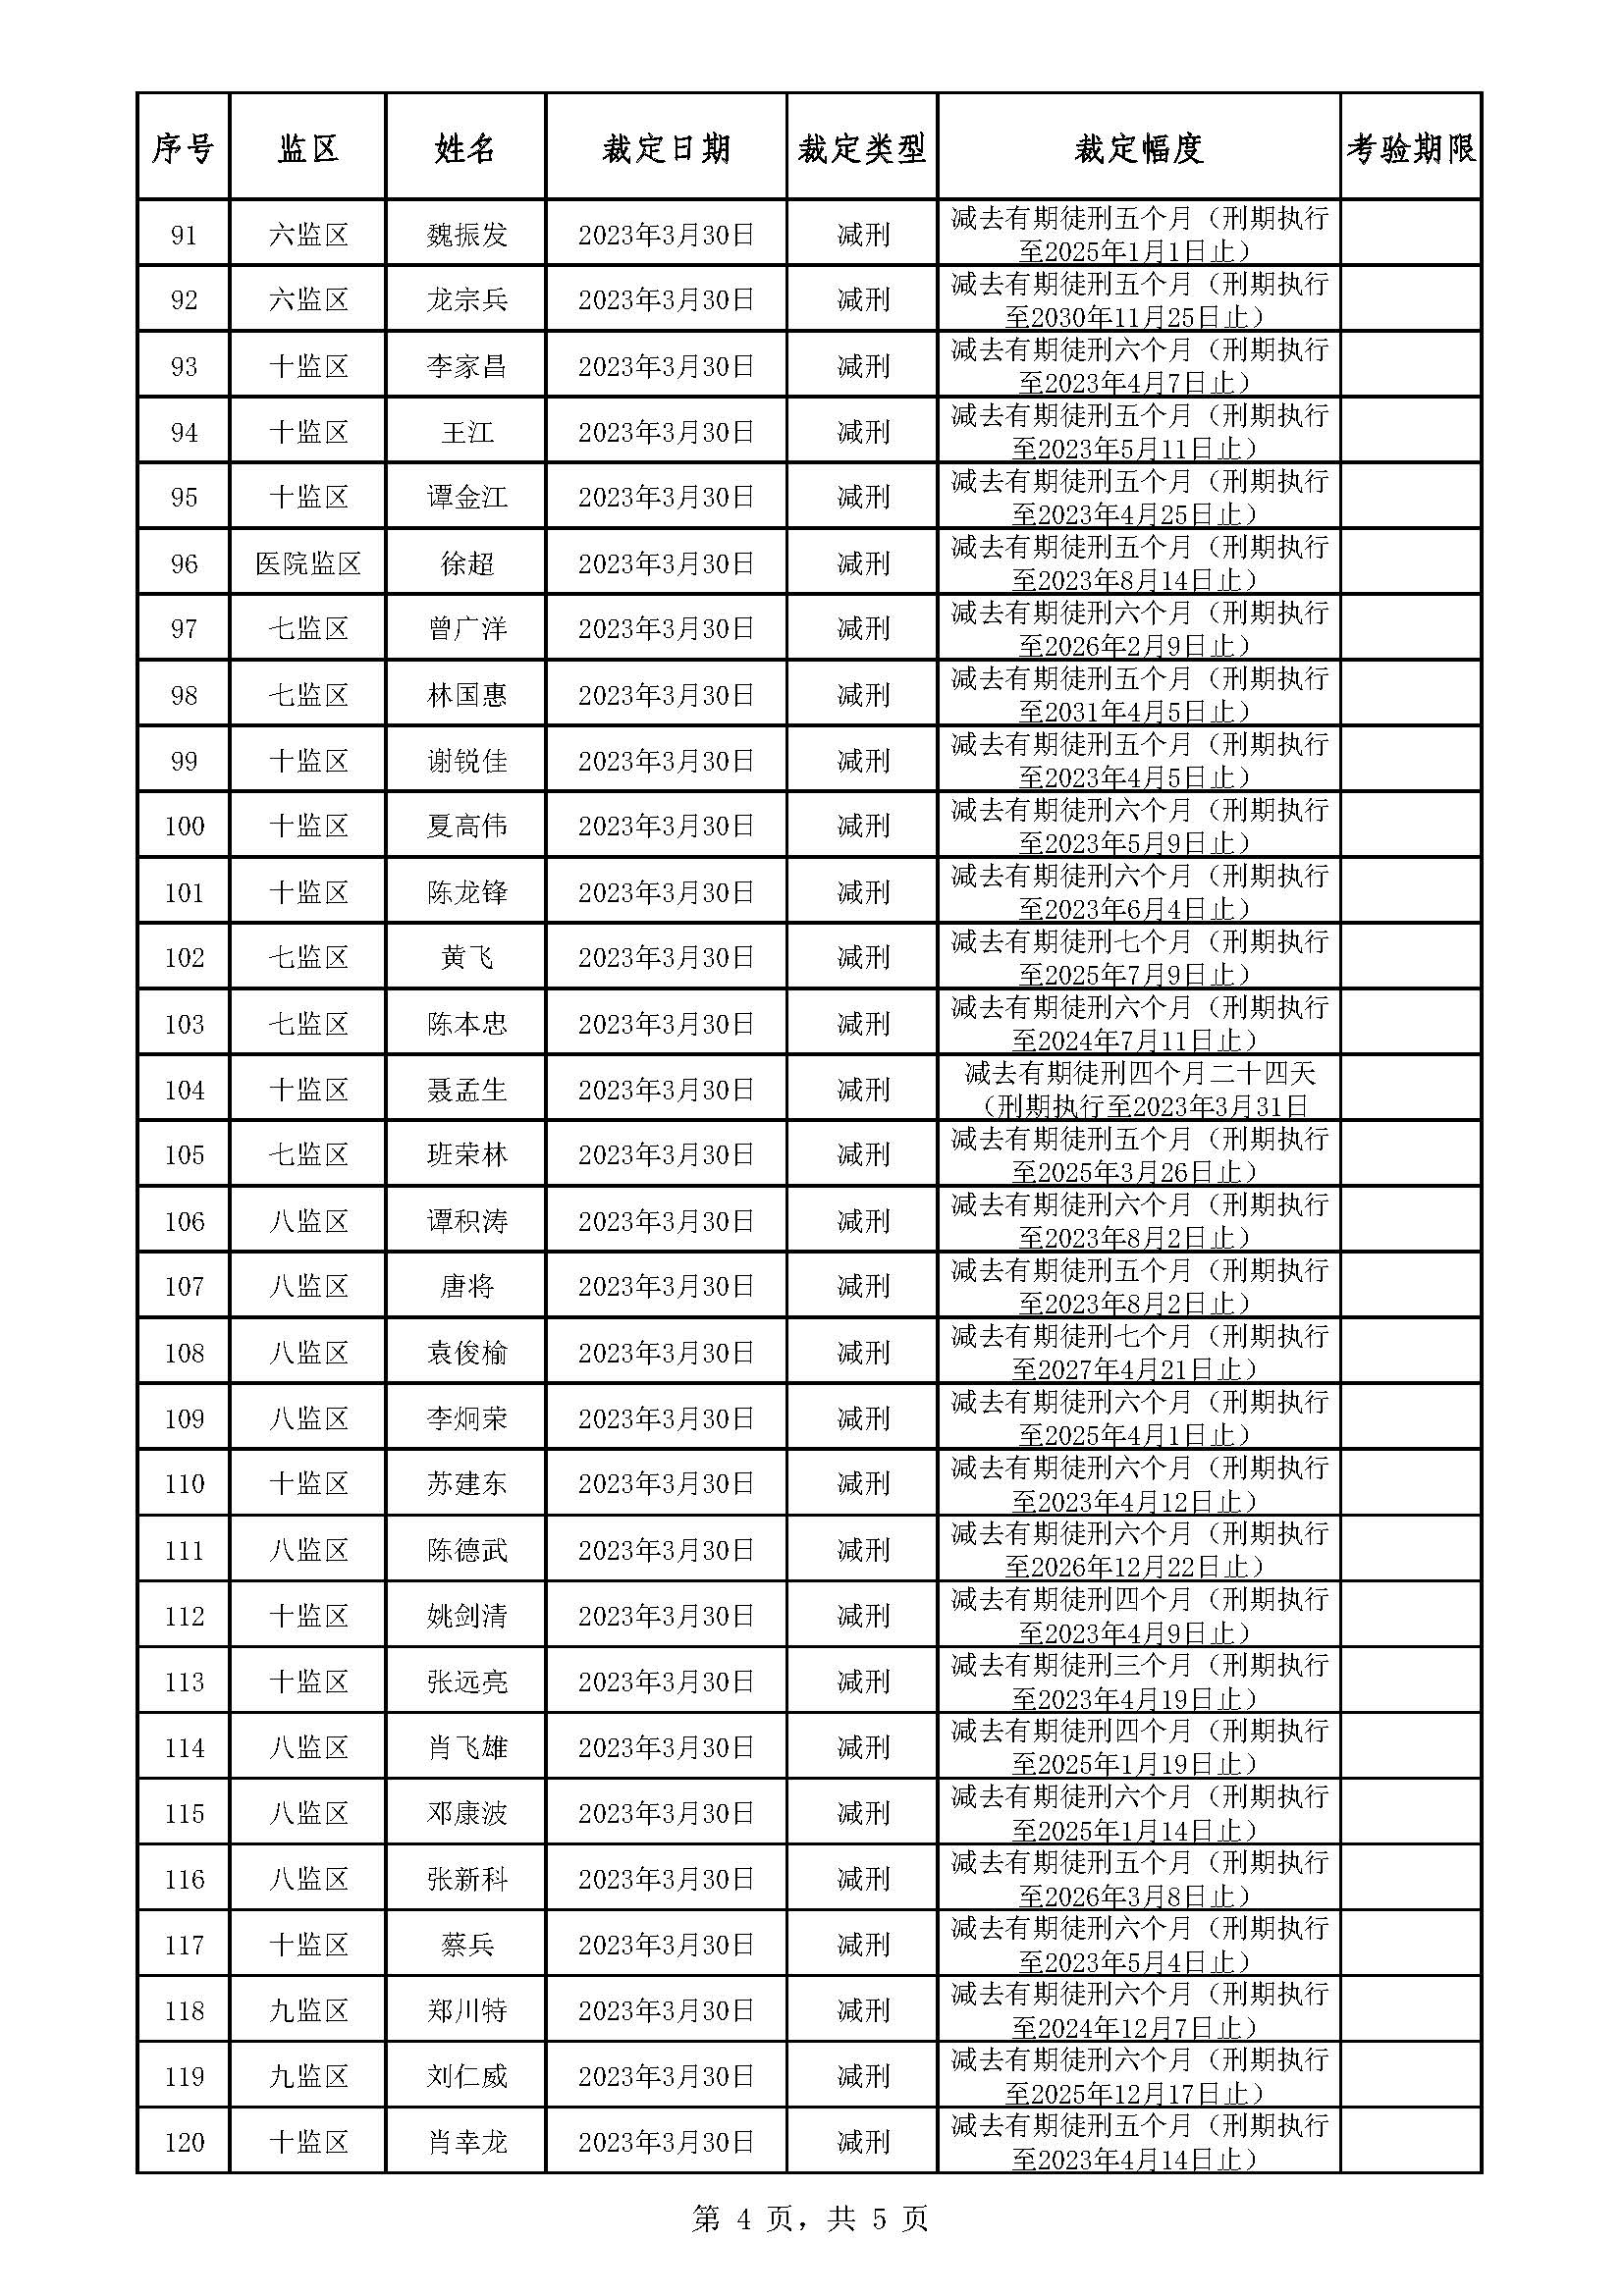 广东省明康监狱2022年第六批减刑假释裁定榜_页面_4.jpg